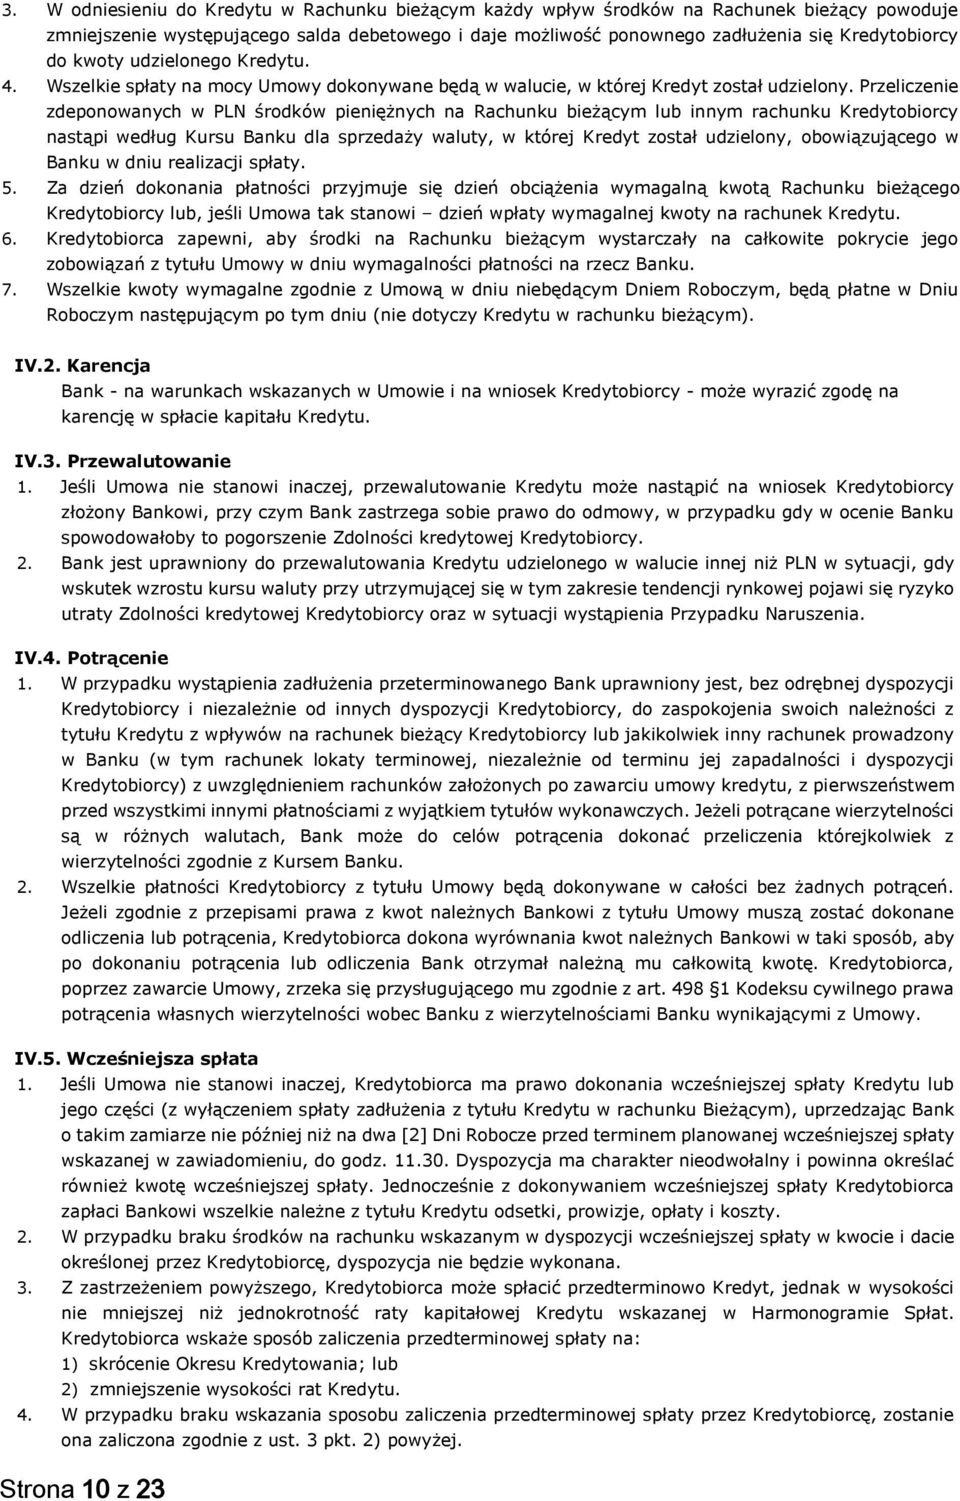 Przeliczenie zdeponowanych w PLN środków pieniężnych na Rachunku bieżącym lub innym rachunku Kredytobiorcy nastąpi według Kursu Banku dla sprzedaży waluty, w której Kredyt został udzielony,